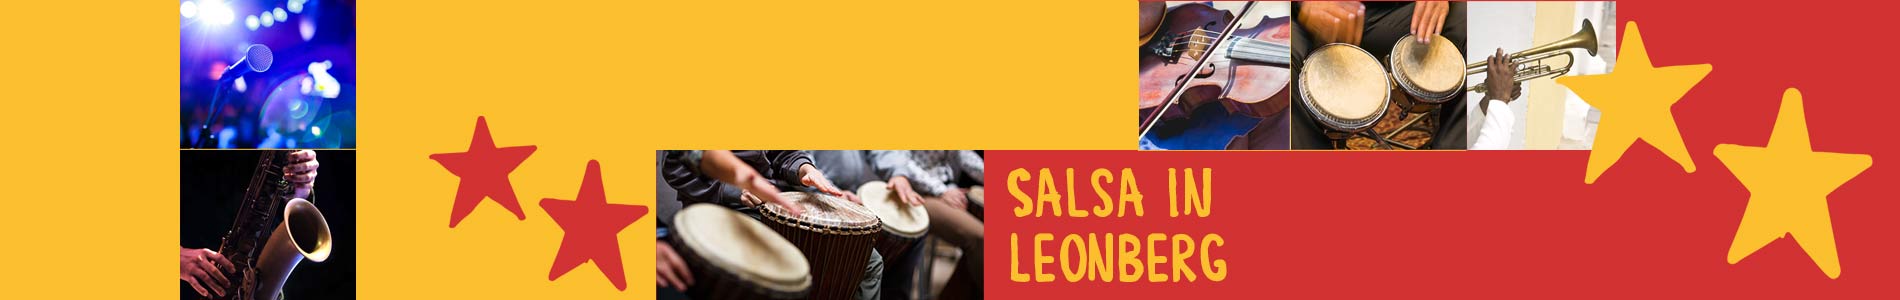 Salsa in Leonberg – Salsa lernen und tanzen, Tanzkurse, Partys, Veranstaltungen